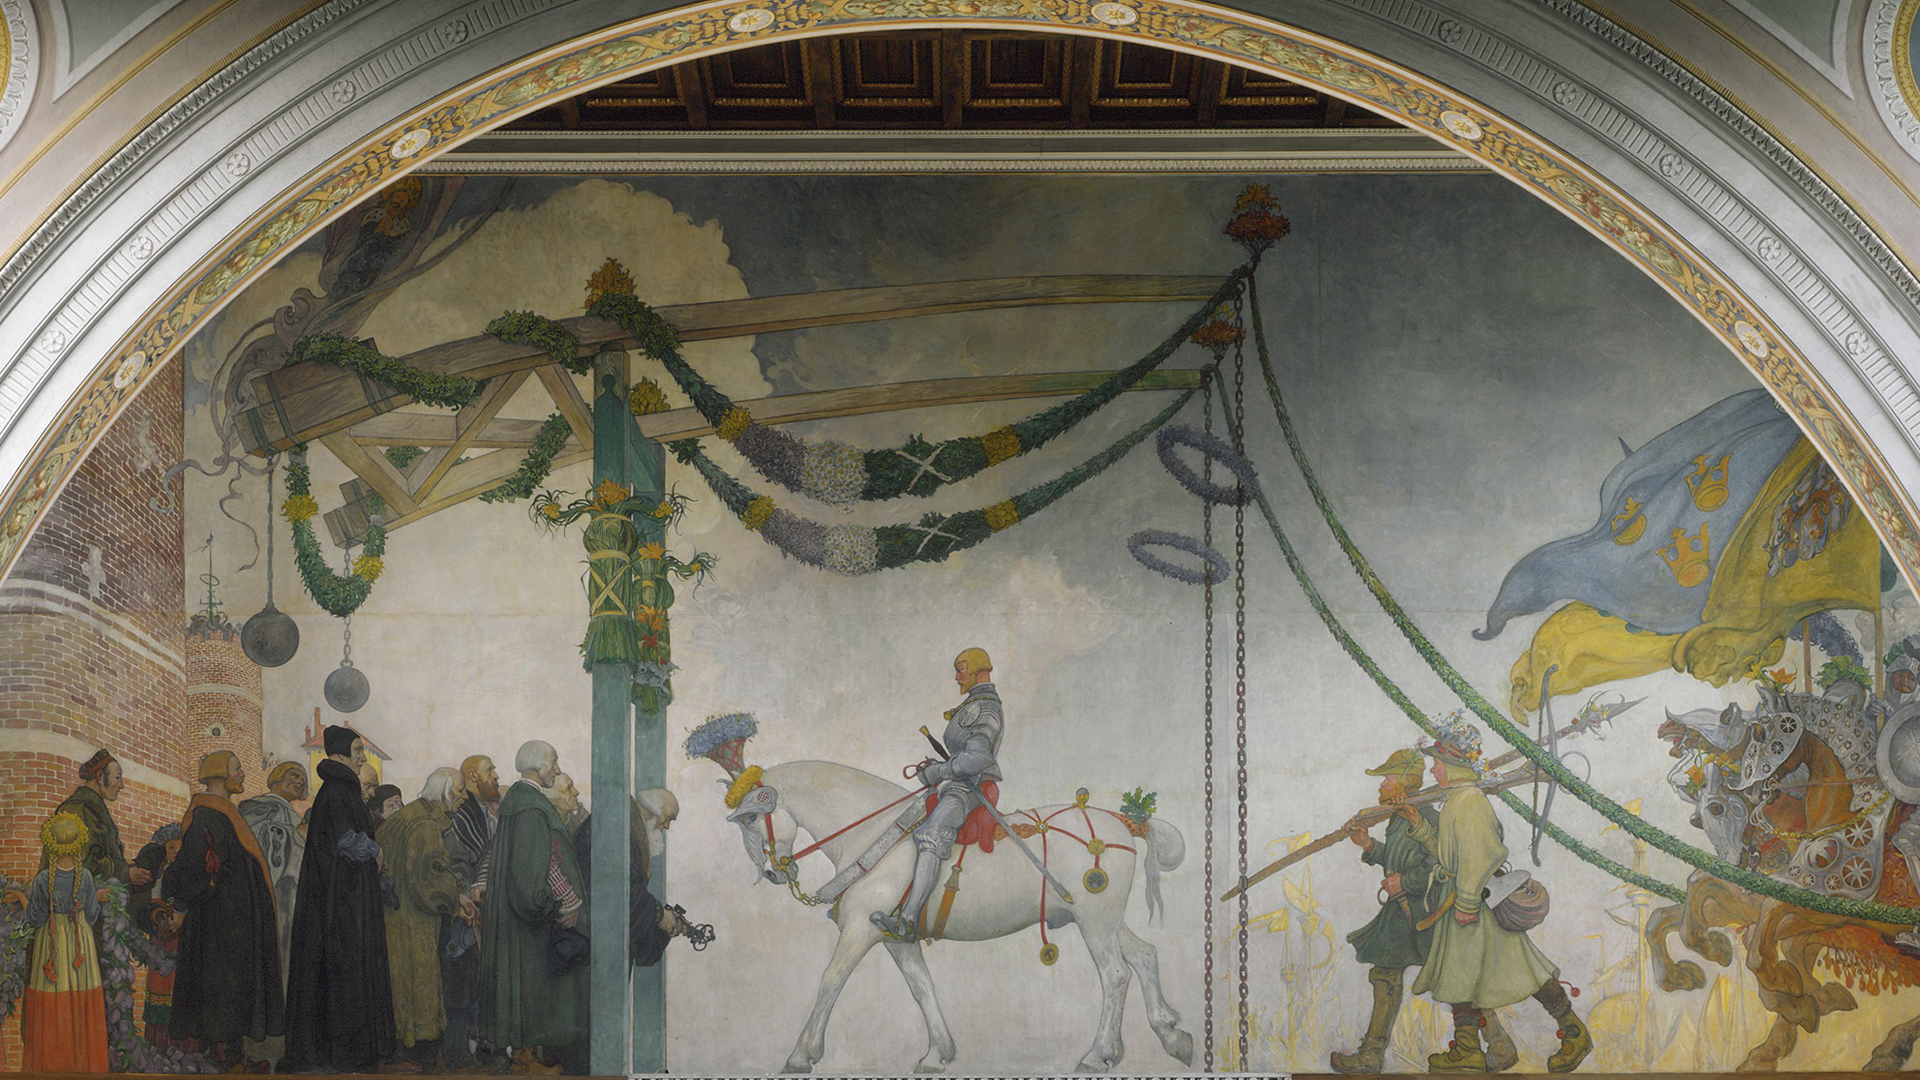 En väggmålning. I mitten en man på en vit häst. Runt honom står åskådare och ovanför hänger blommor och girlander.